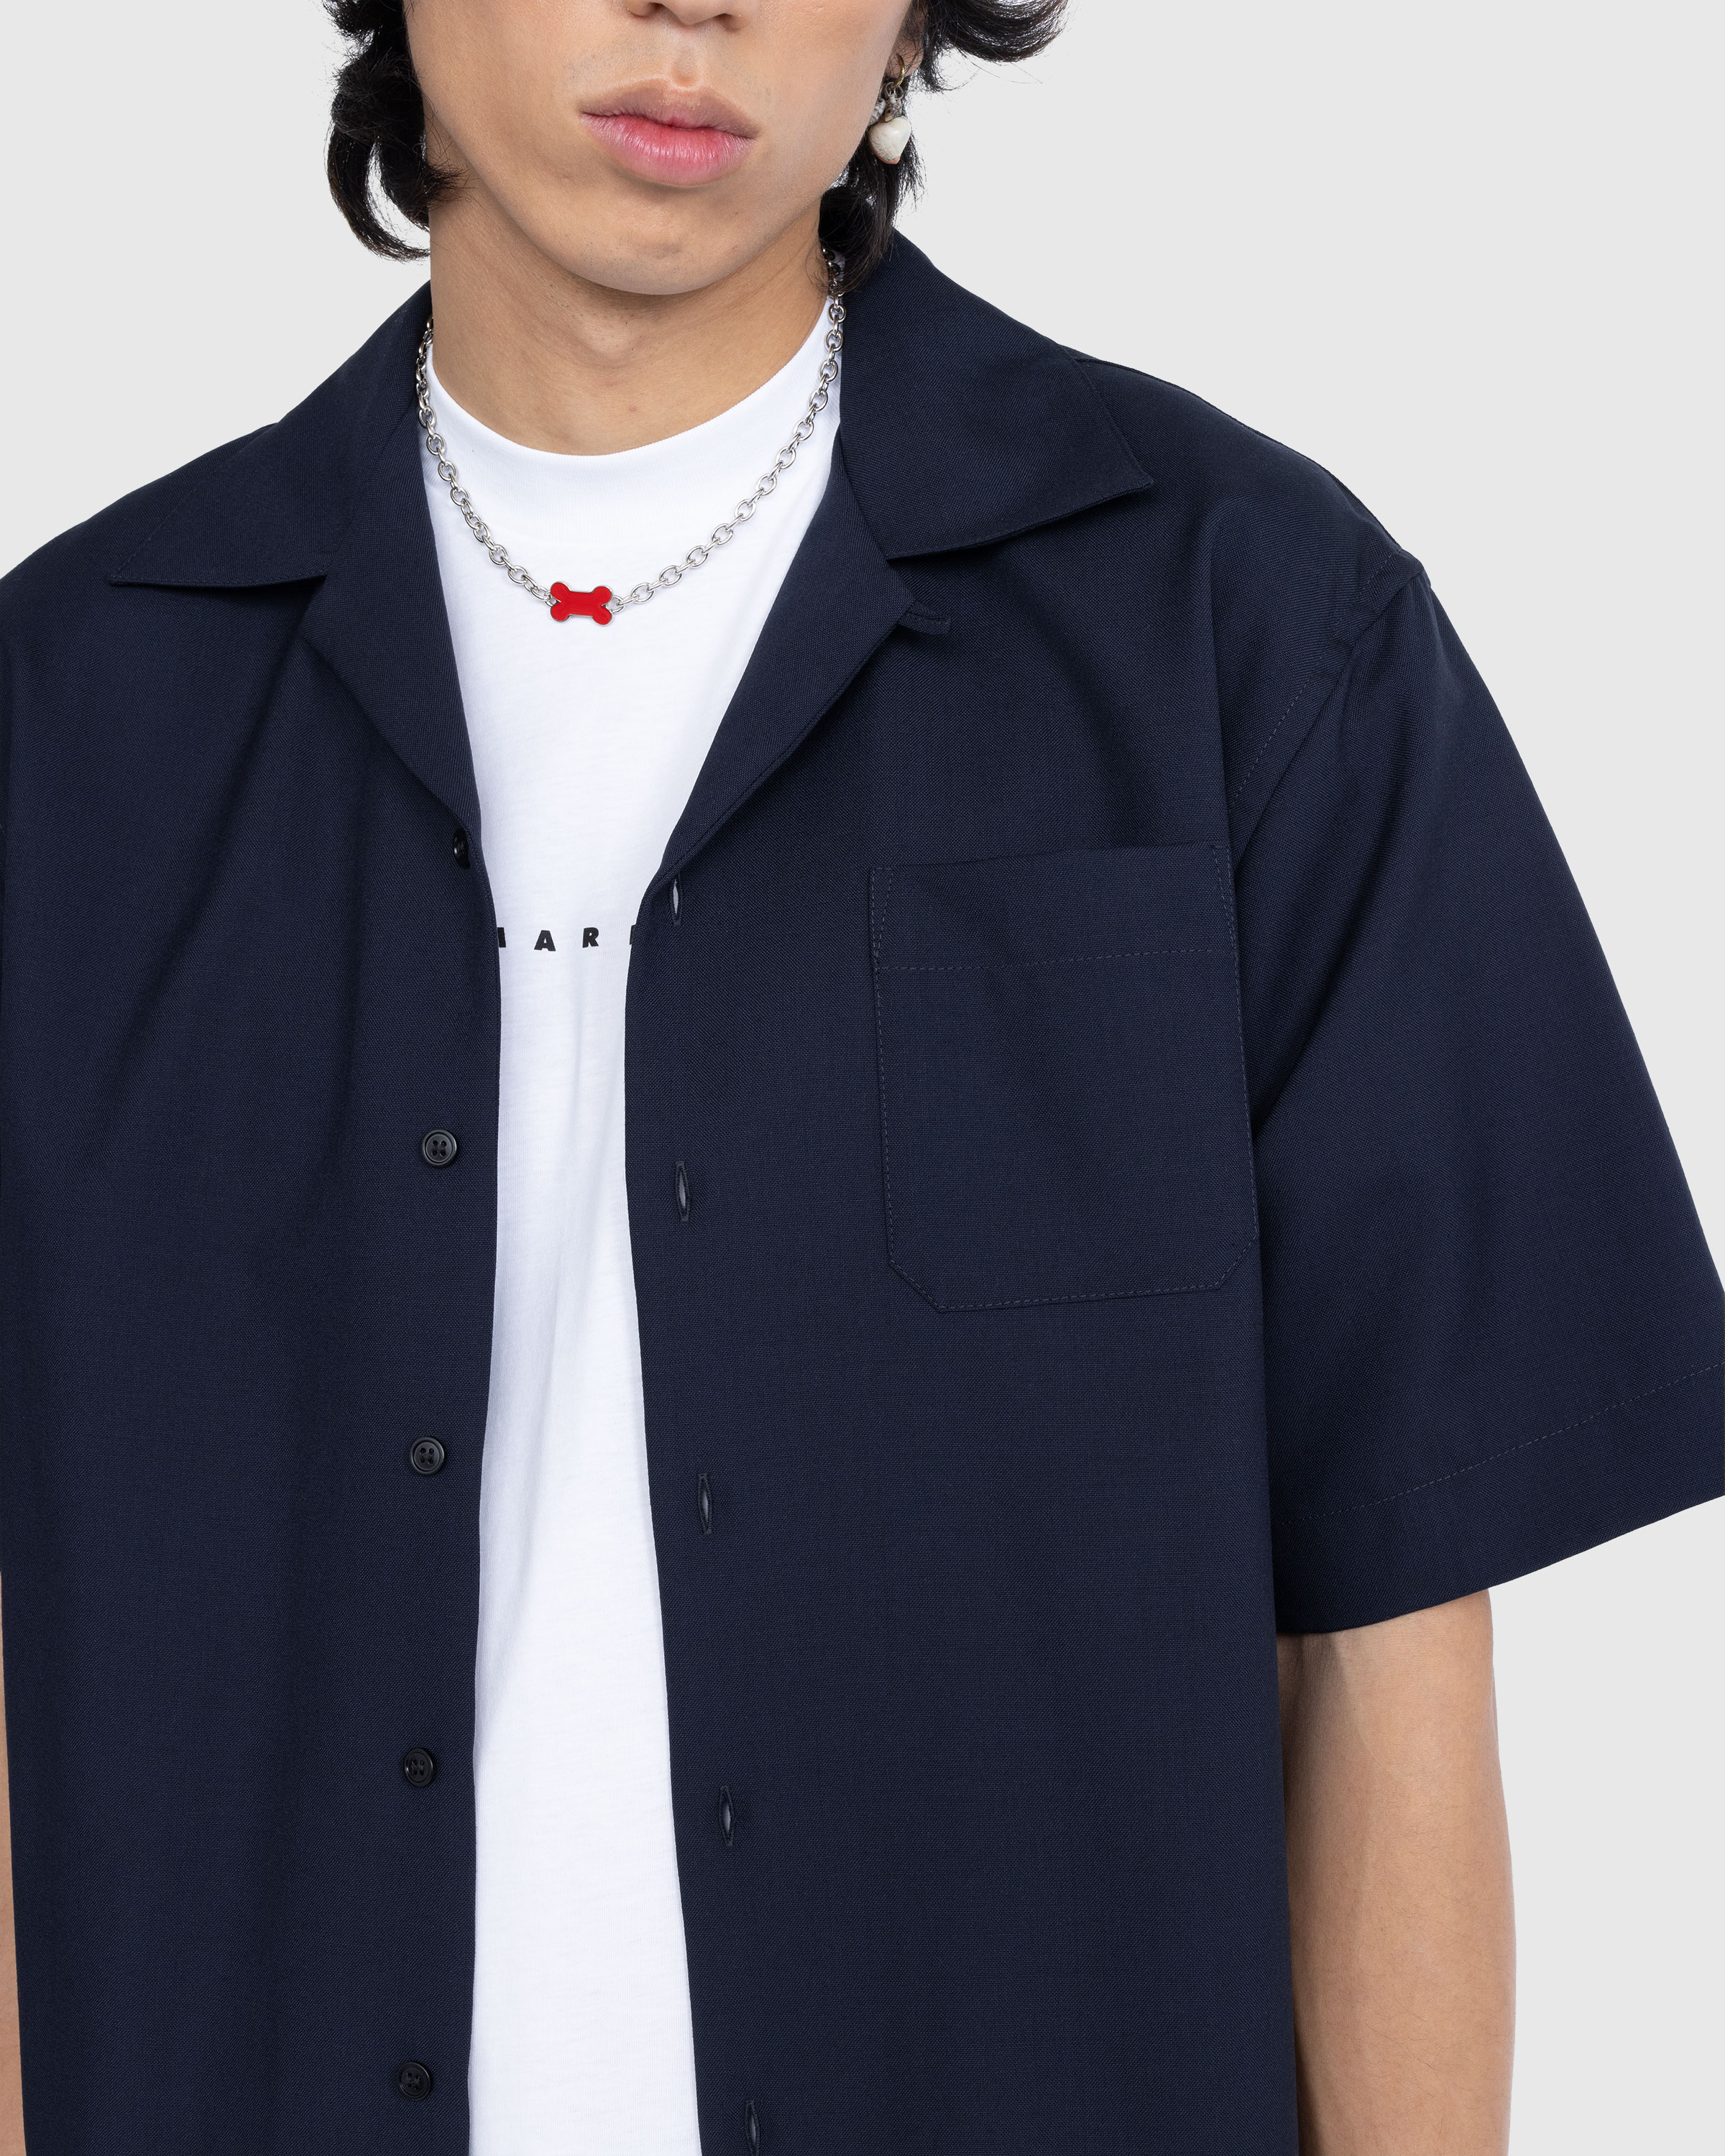 Marni - Bowling Shirt Navy - Clothing - Blue - Image 5